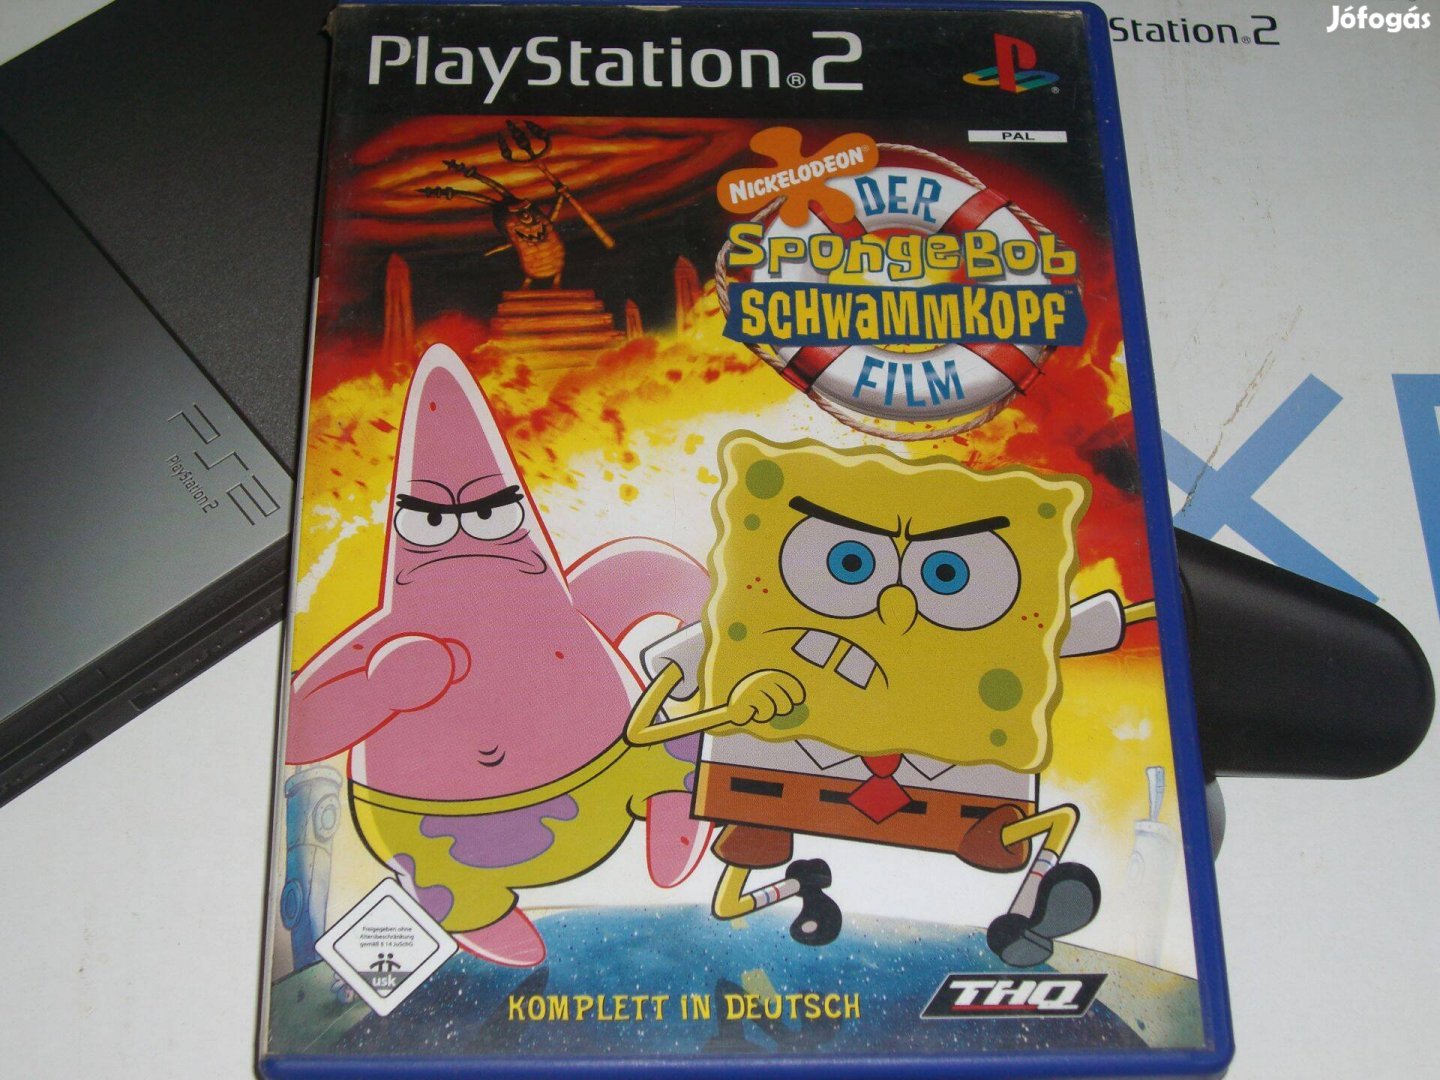 Spongebob Schwammkopf Film Playstation 2 eredeti lemez eladó